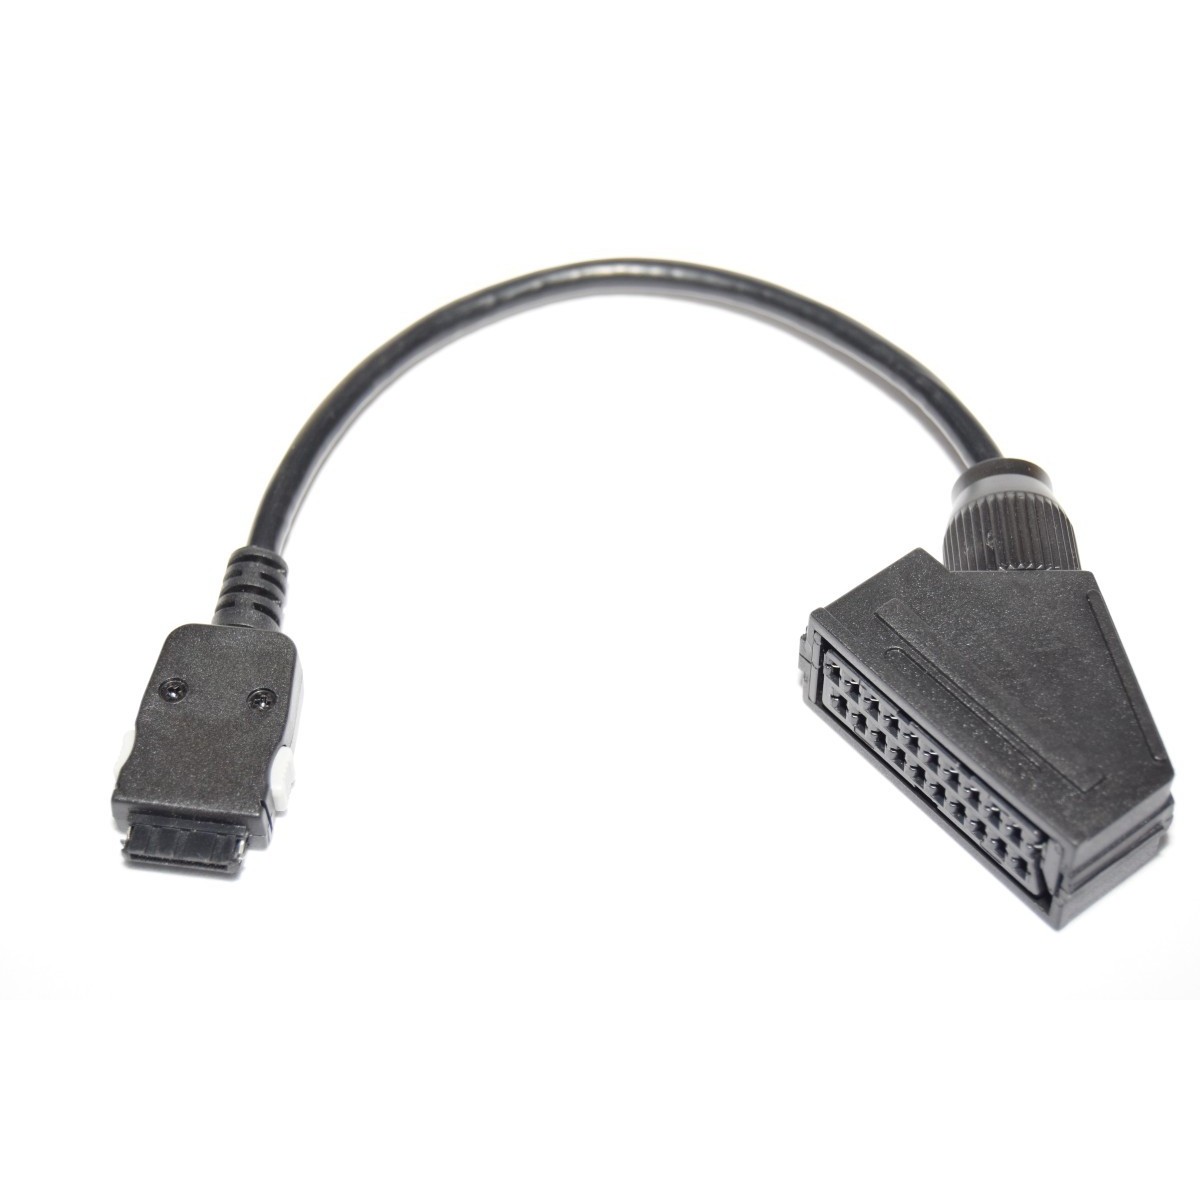 Cables y adaptadores de video HDMI con Euroconector para TV y Home